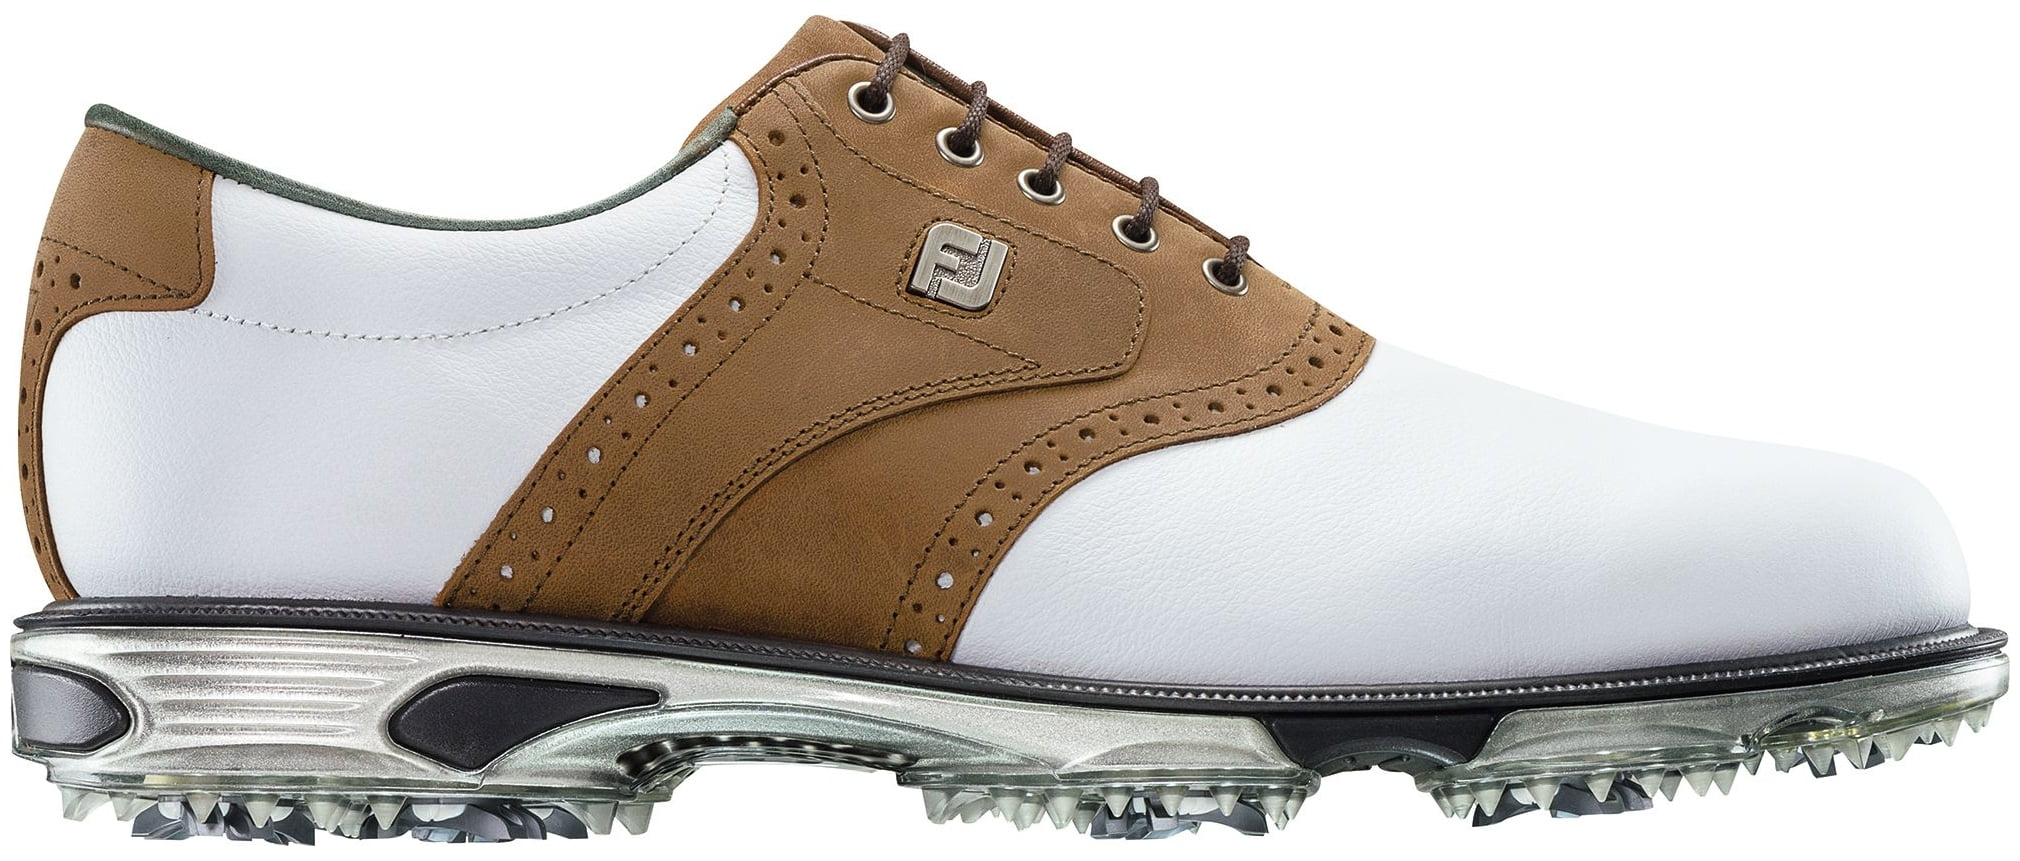 FootJoy DryJoys Tour Saddle Golf Shoes (White/Tan, 11.5) - Walmart.com ...